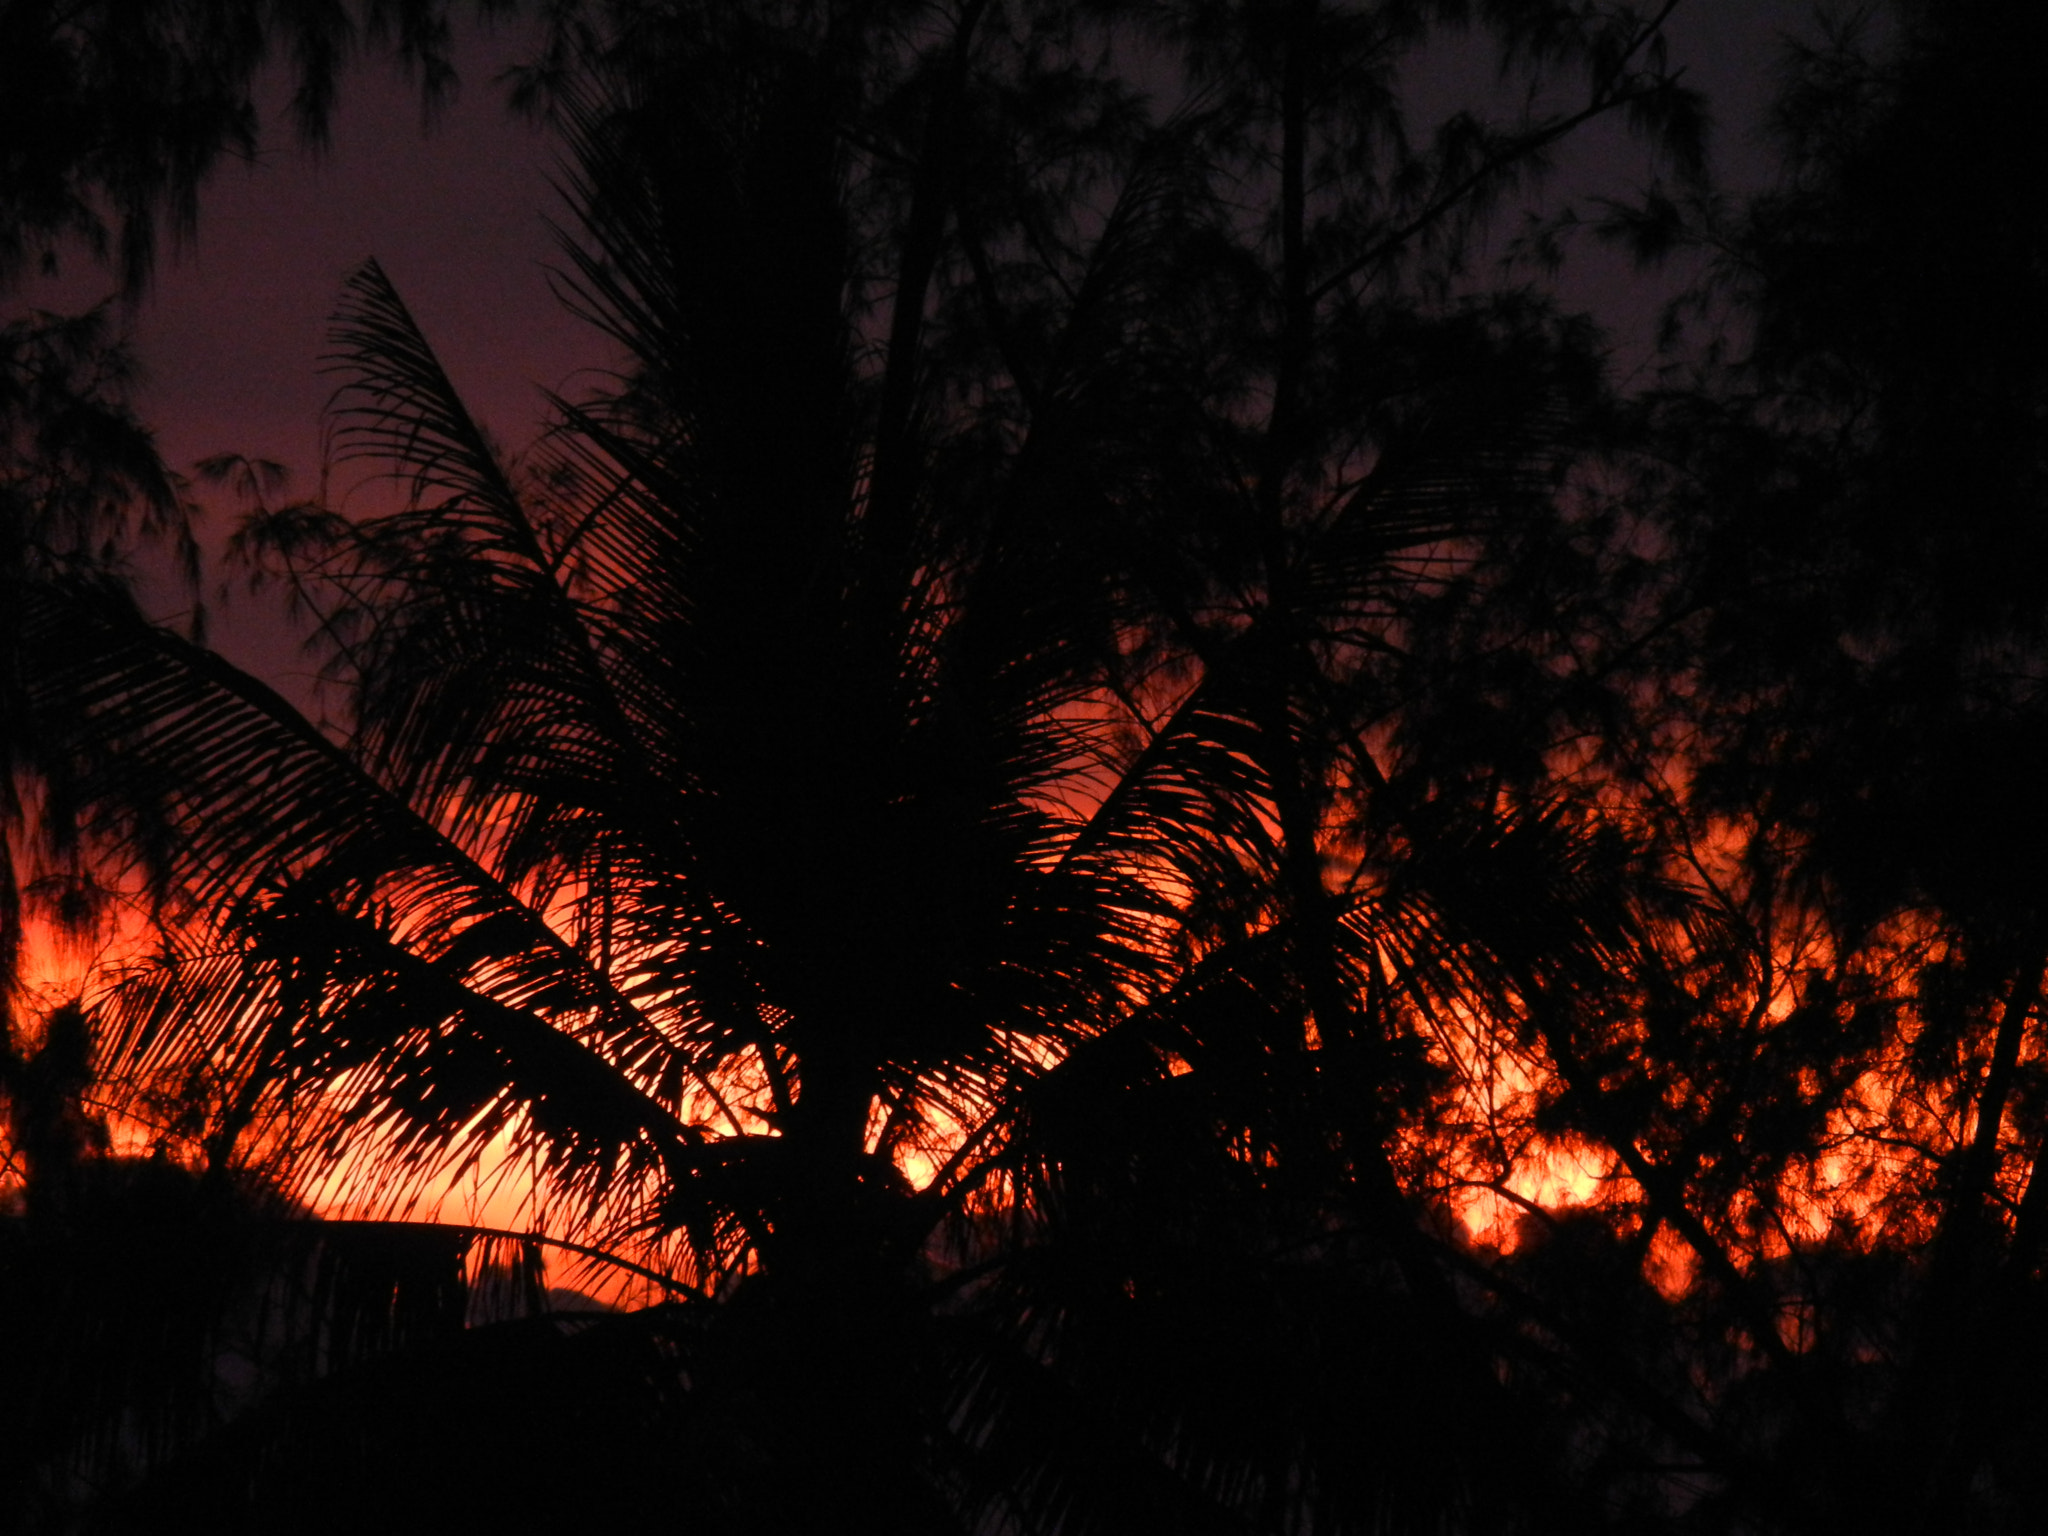 Nikon Coolpix S8100 sample photo. Palmier sur coucher de soleil photography